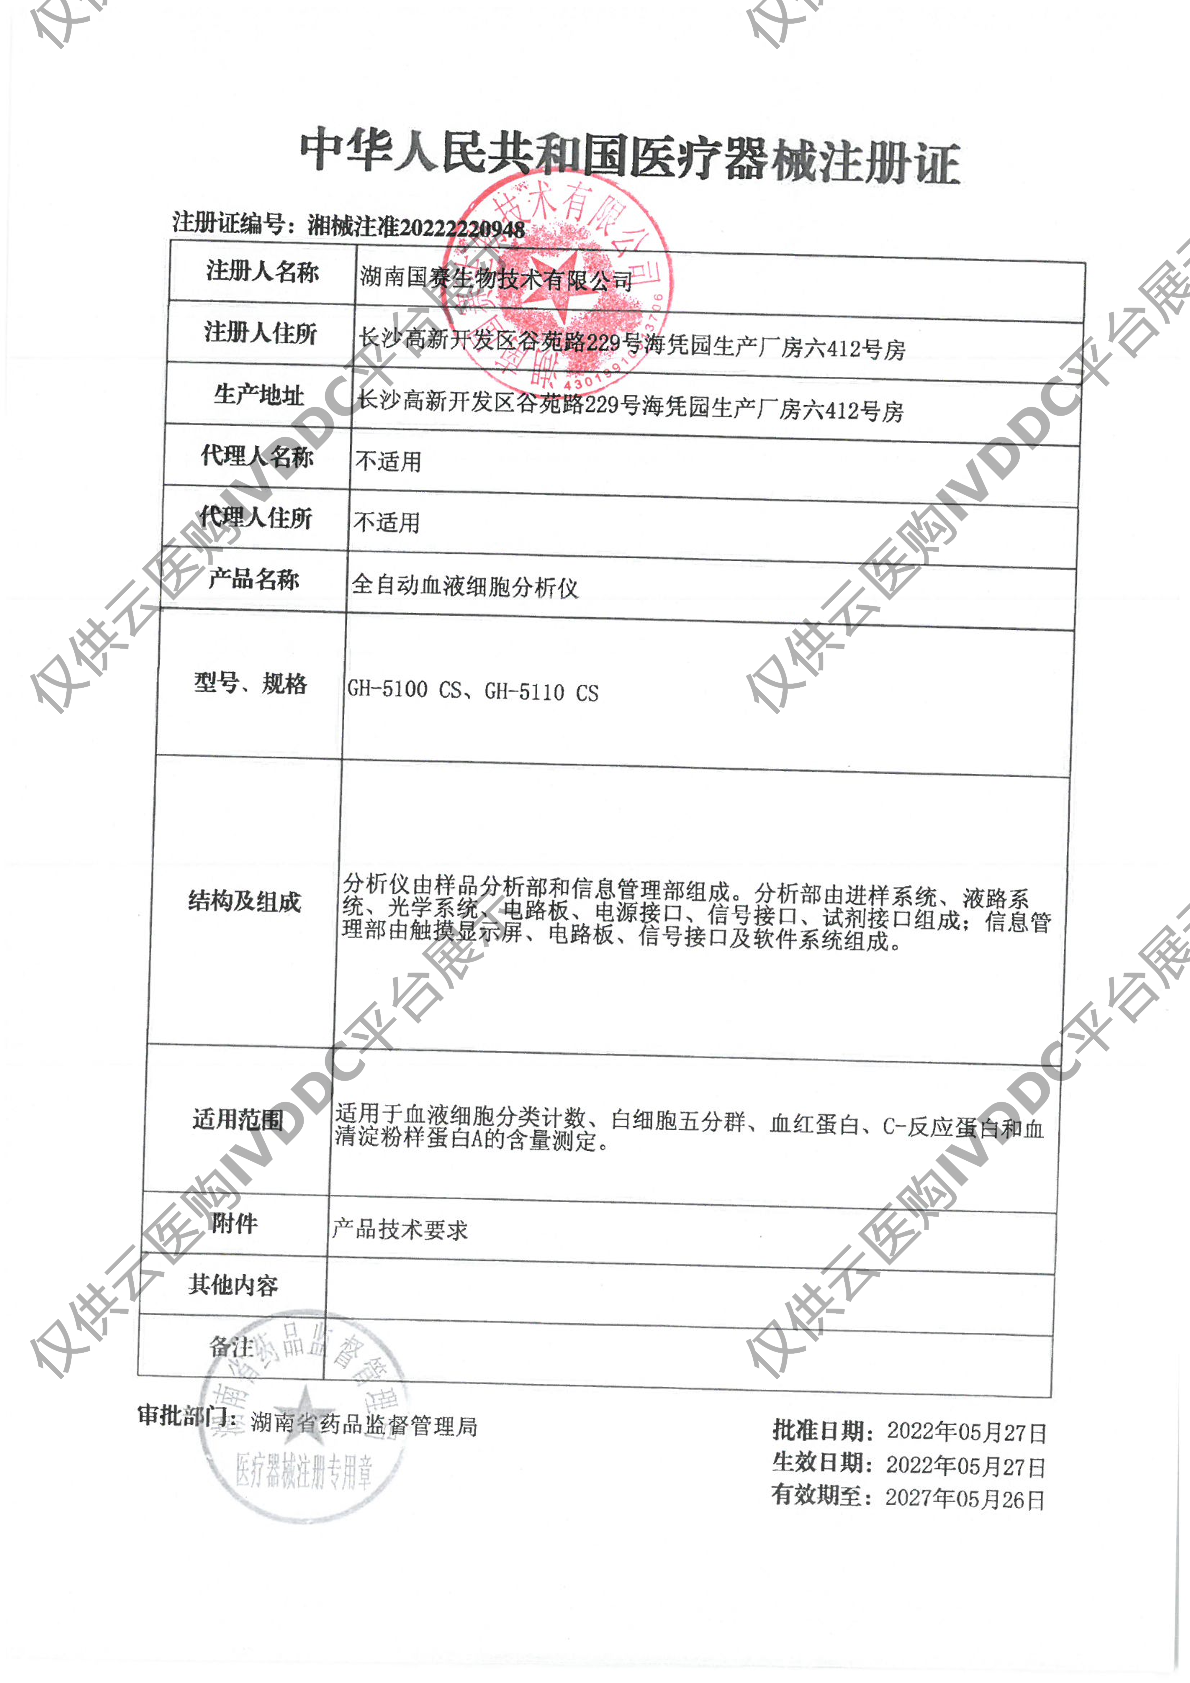 【国赛】全自动血液细胞分析仪/GH-5100 CS注册证